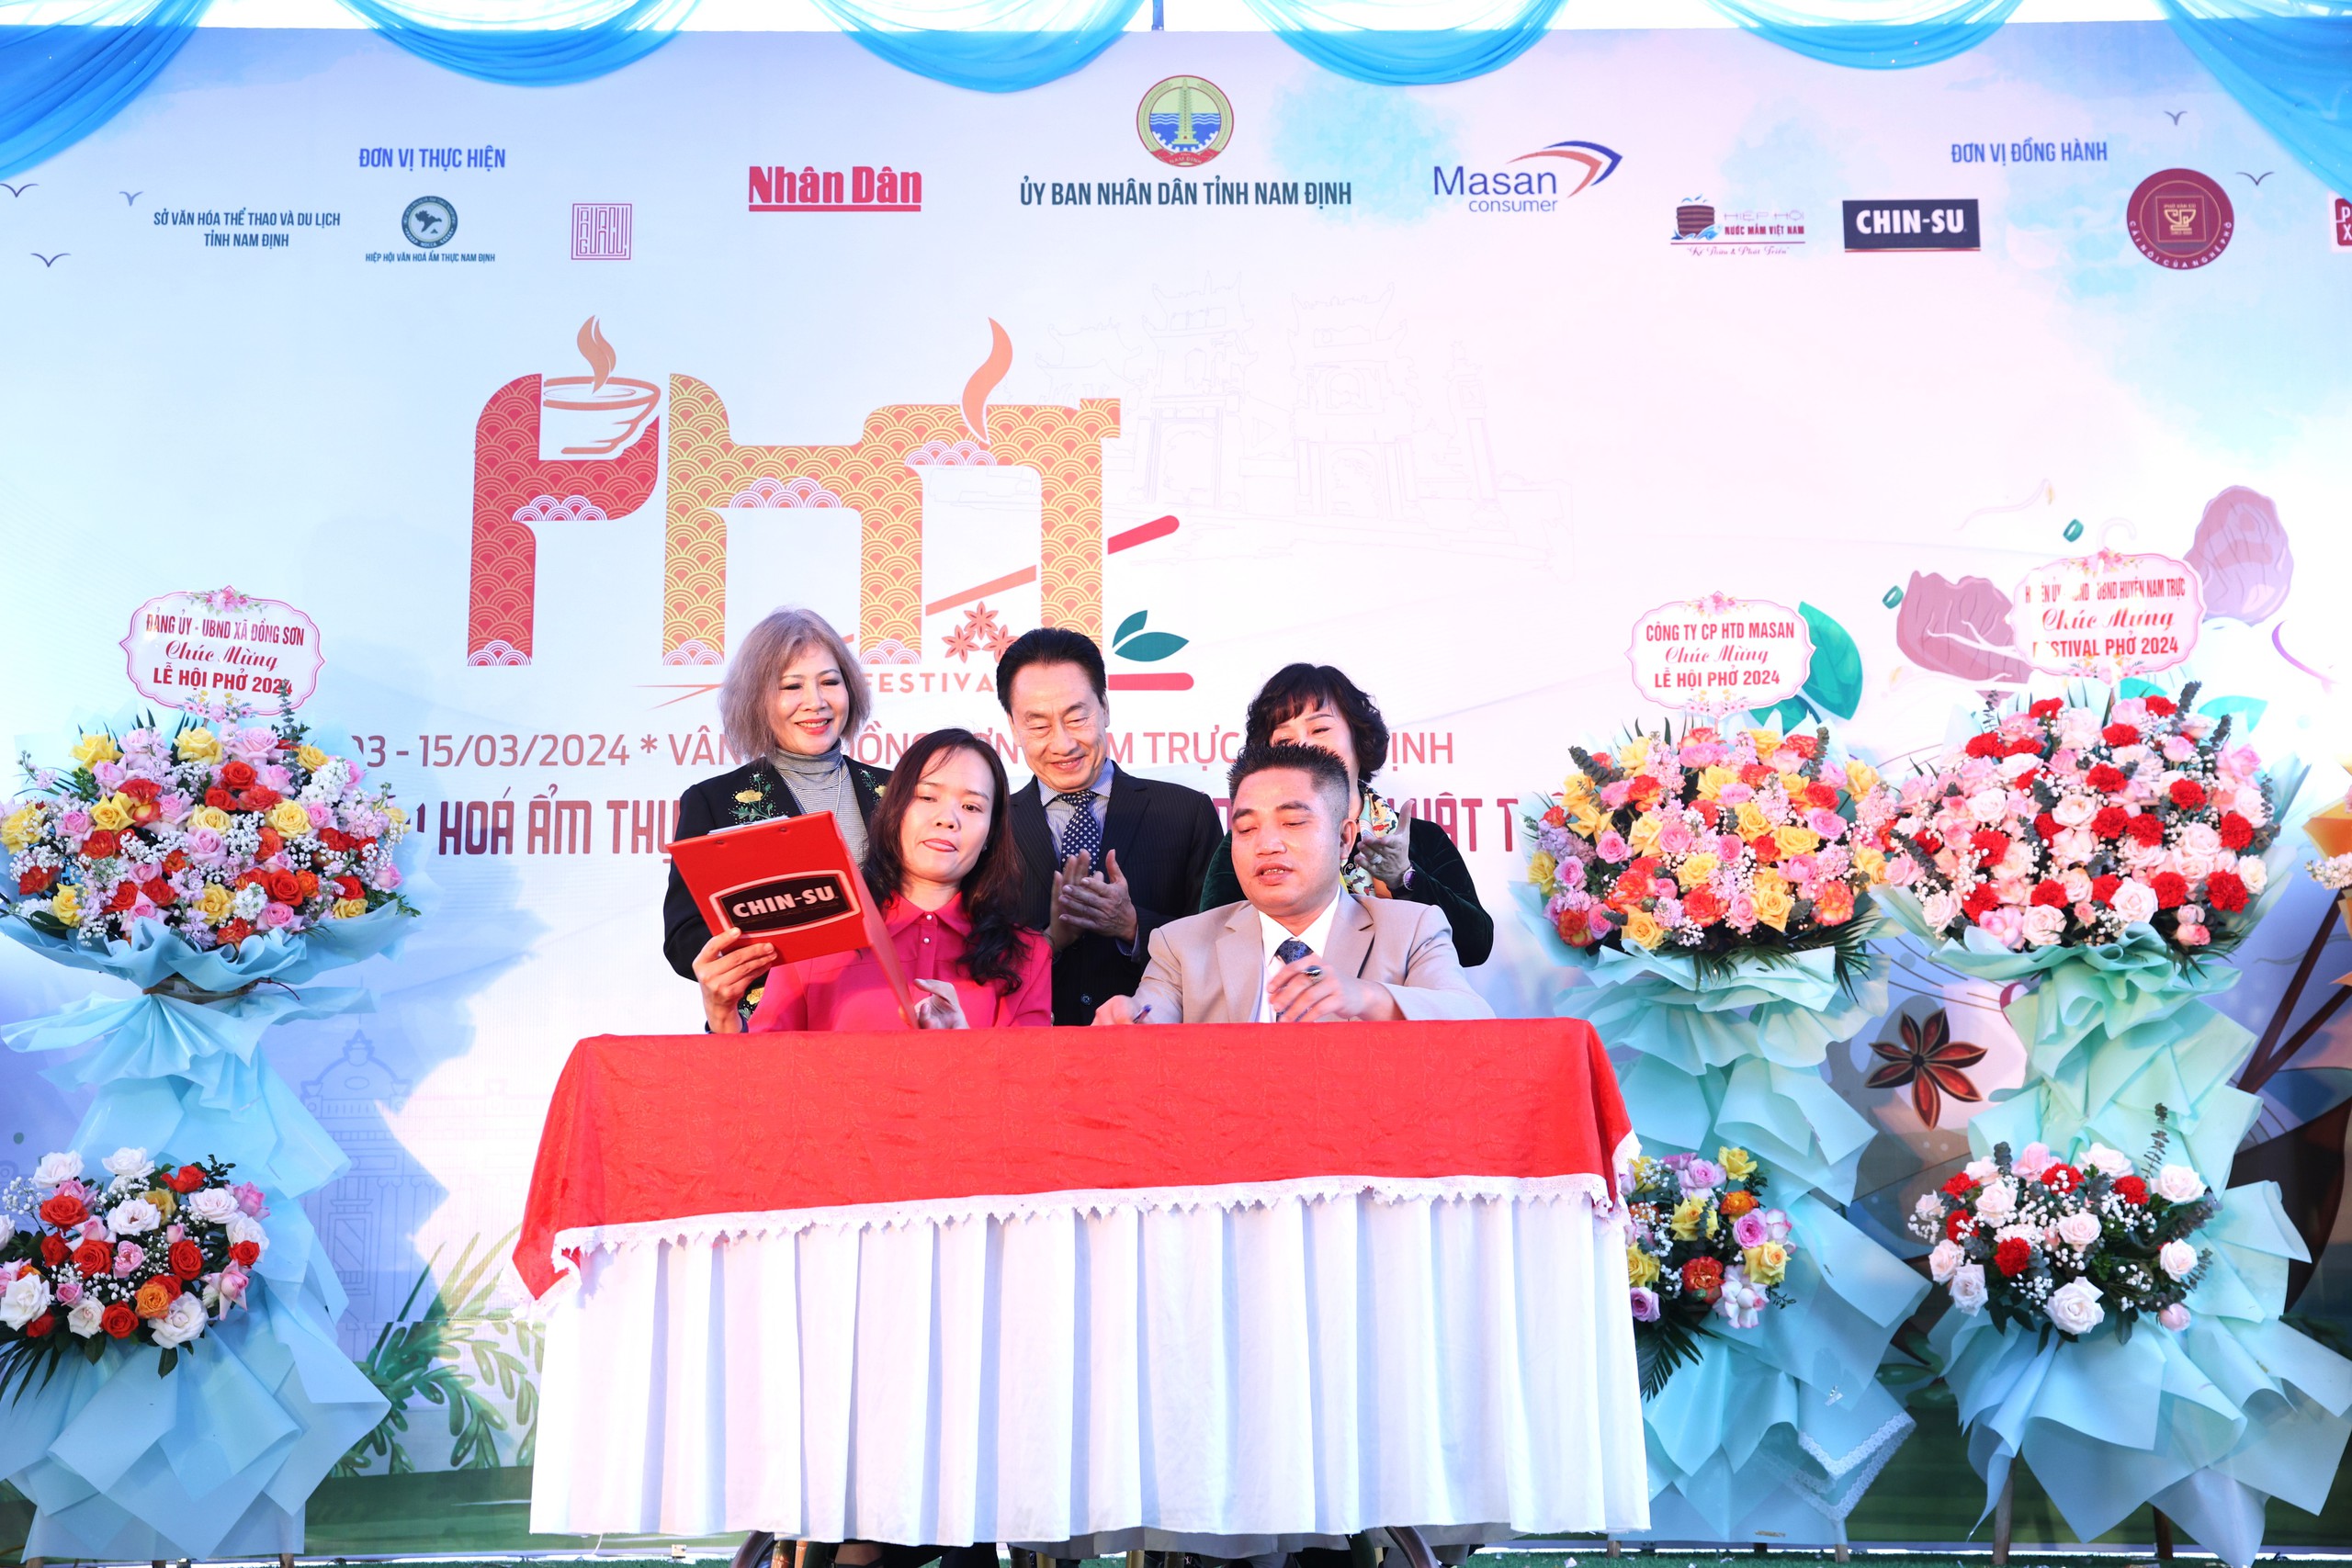 Festival Phở Nam Định 2024: Masan Consumer đồng hành, chung tay bảo tồn làng nghề phở Vân Cù- Ảnh 7.